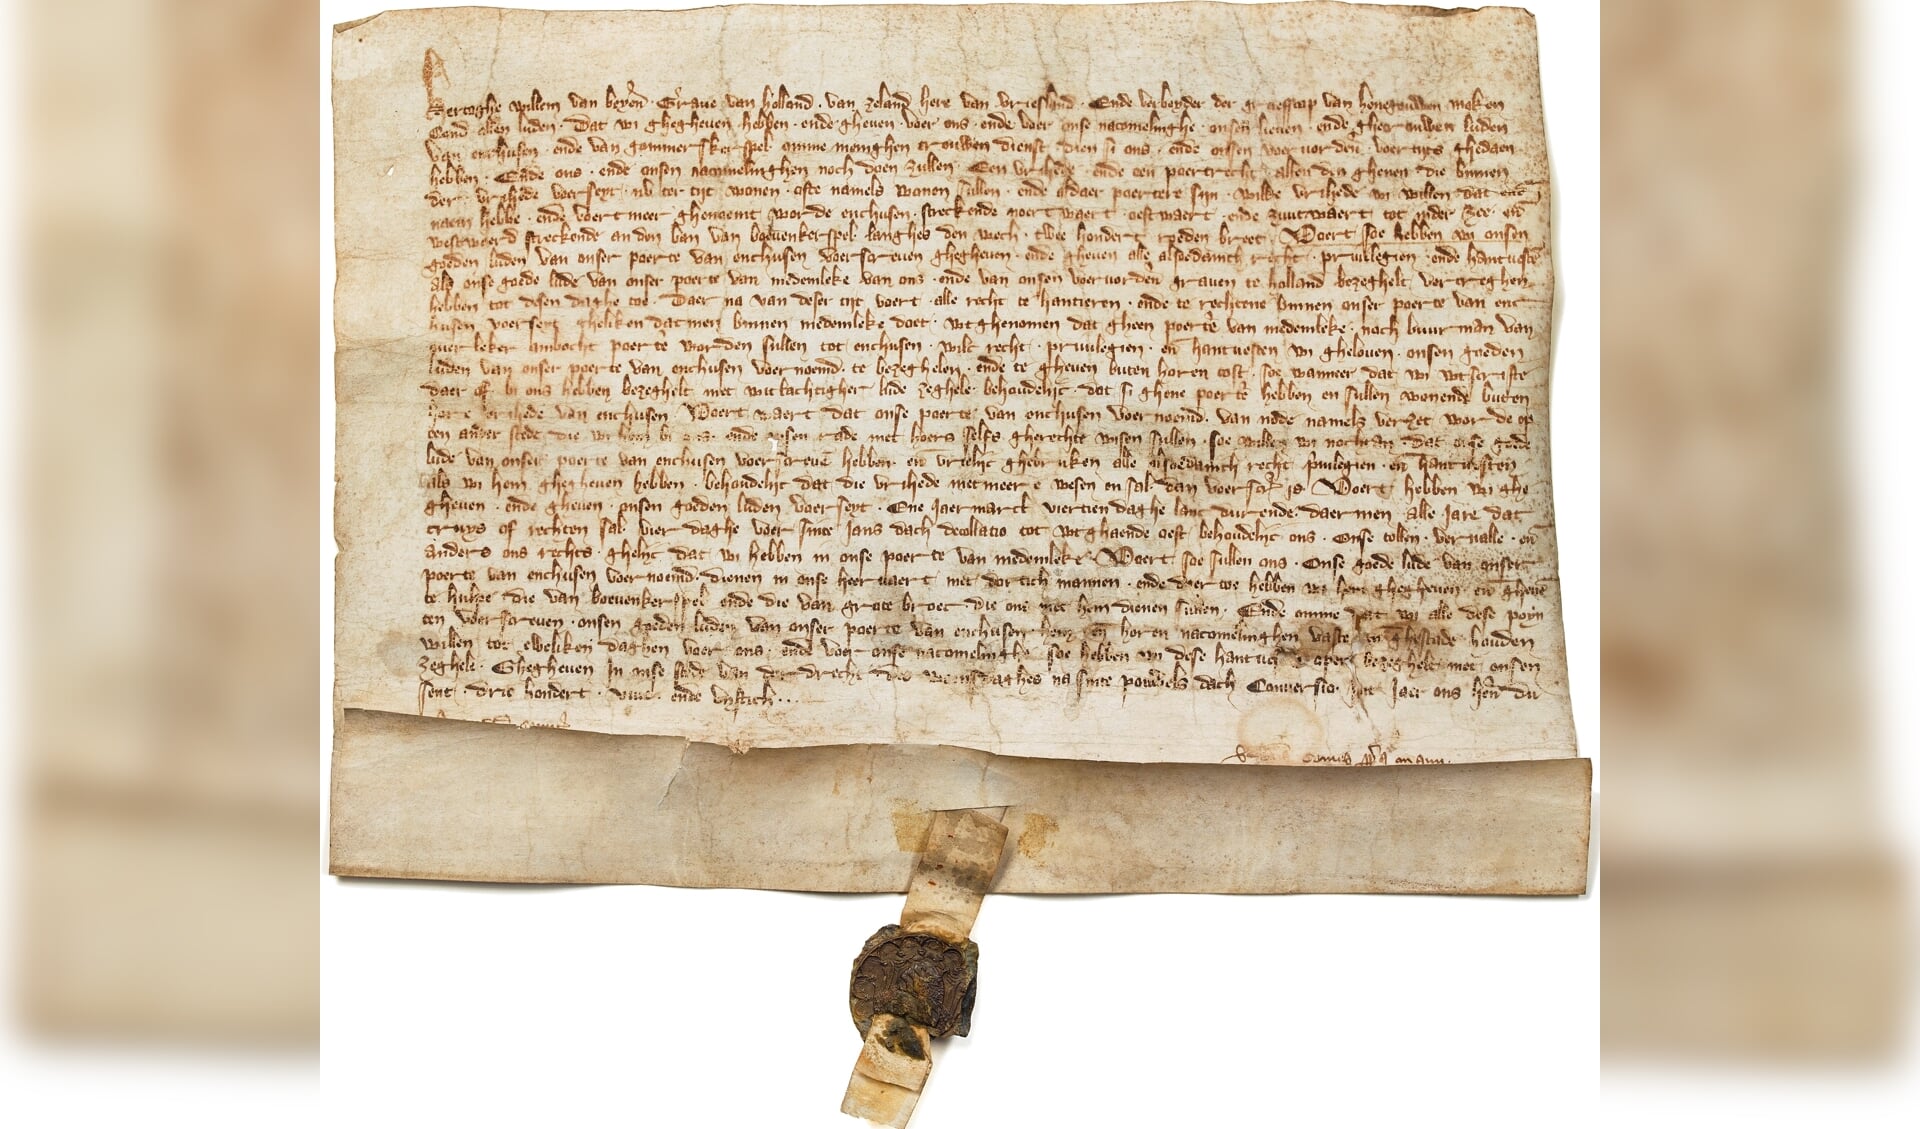 De originele oorkonde waardoor Hoorn 663 jaar geleden van Willem V stadsrechten kreeg.